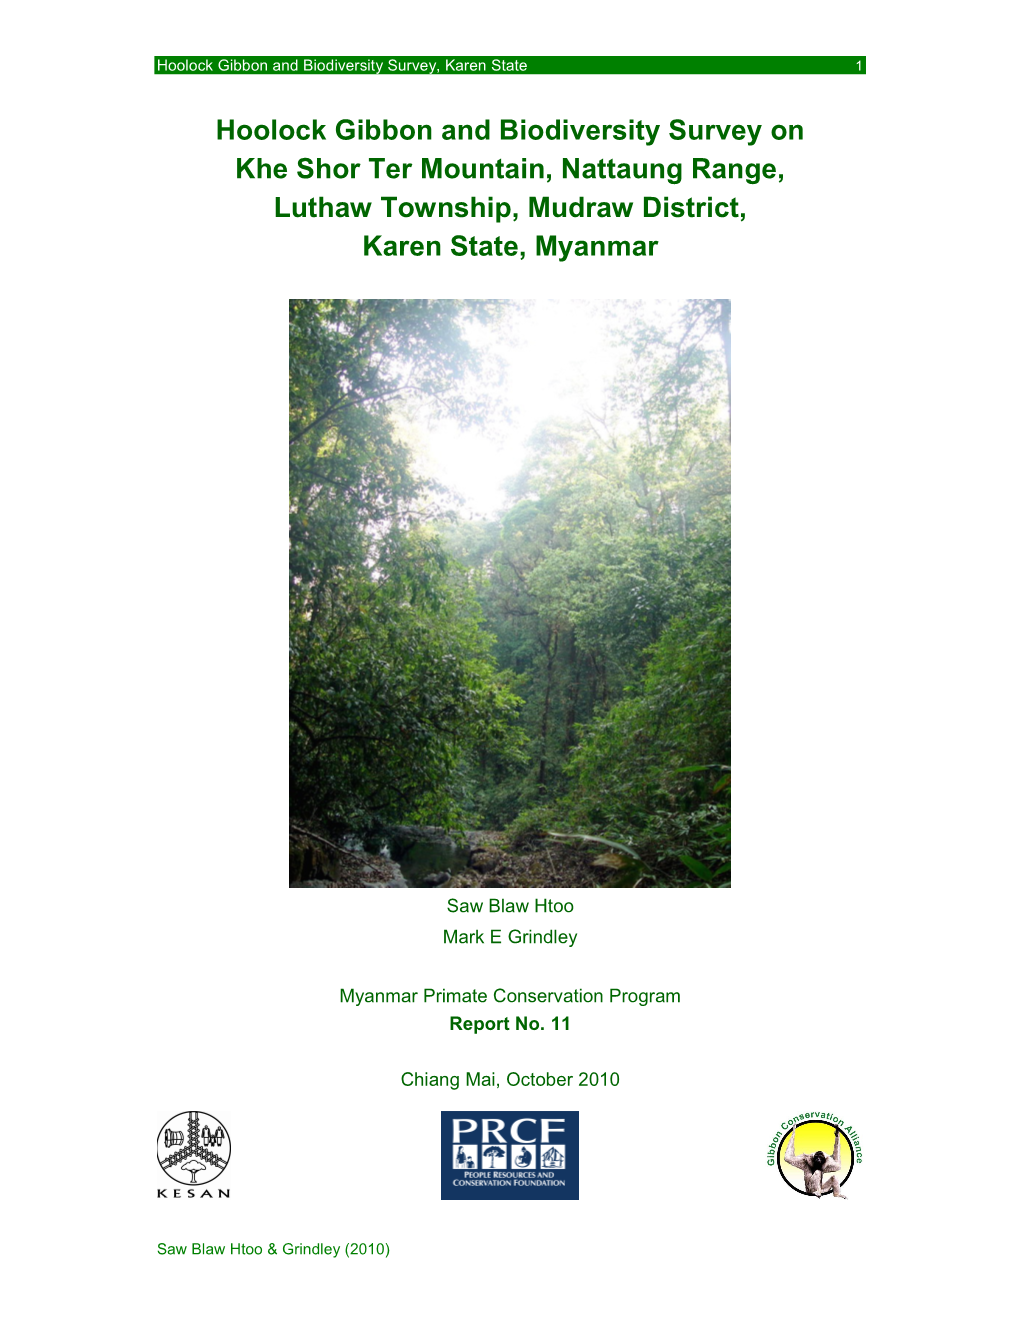 Hoolock Gibbon and Biodiversity Survey on Khe Shor Ter Mountain, Nattaung Range, Luthaw Township, Mudraw District, Karen State, Myanmar